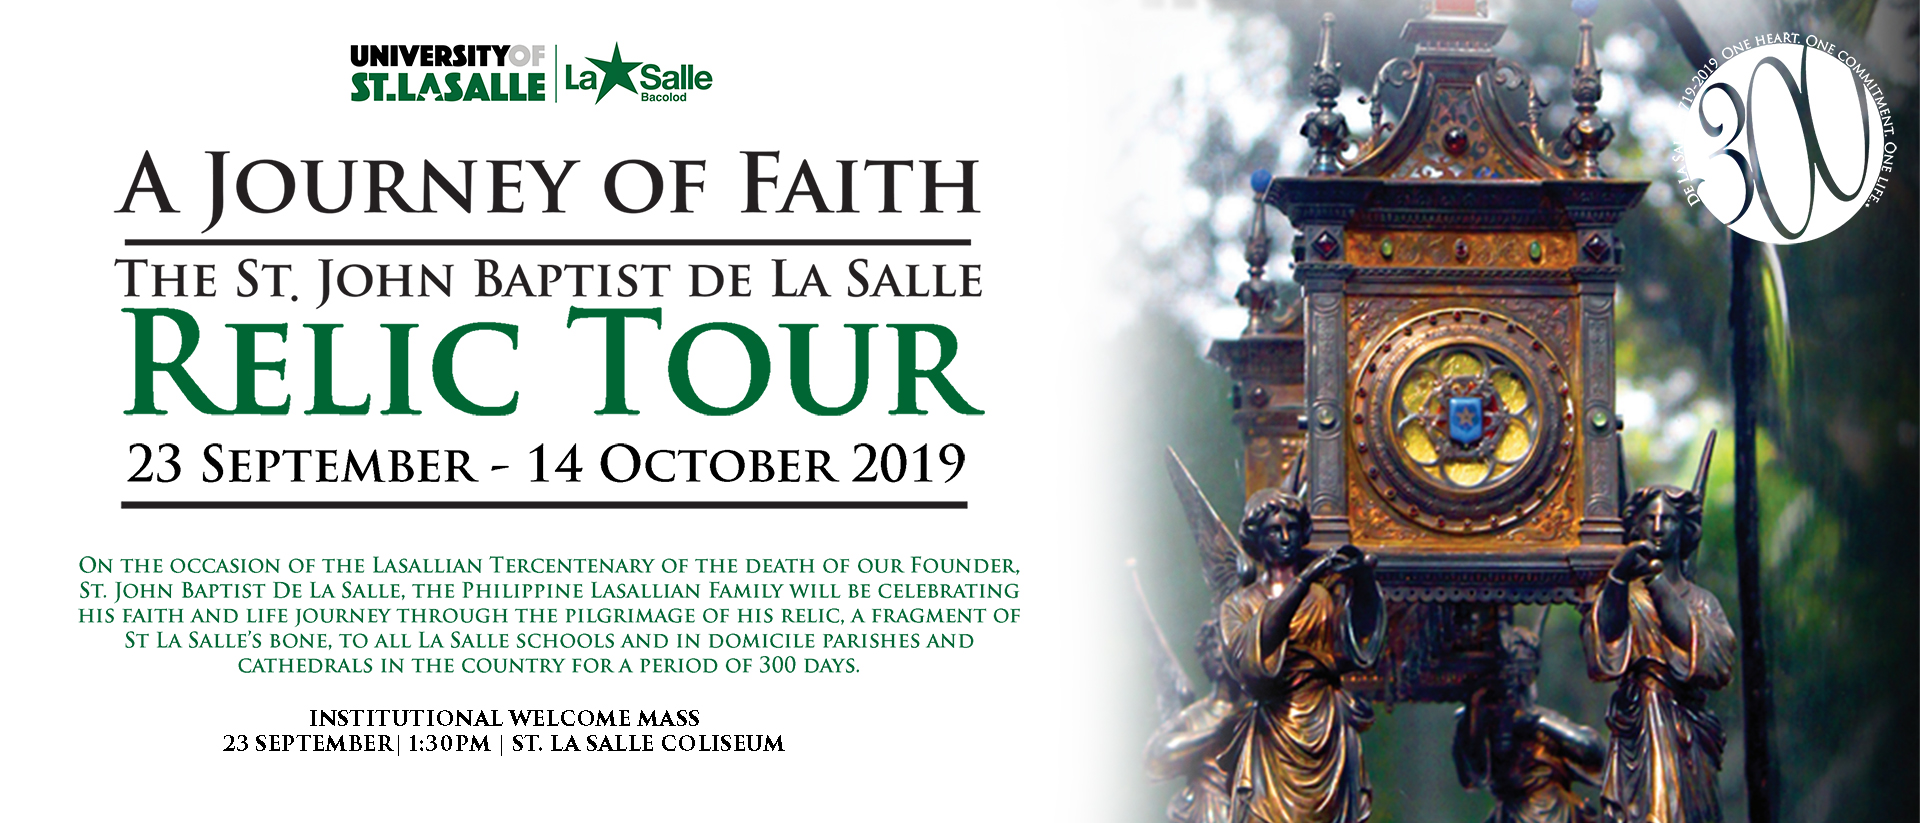 A-Journey-of-Faith-The-St-John-Baptiste-De-La-Salle-Relic-Tour.jpg